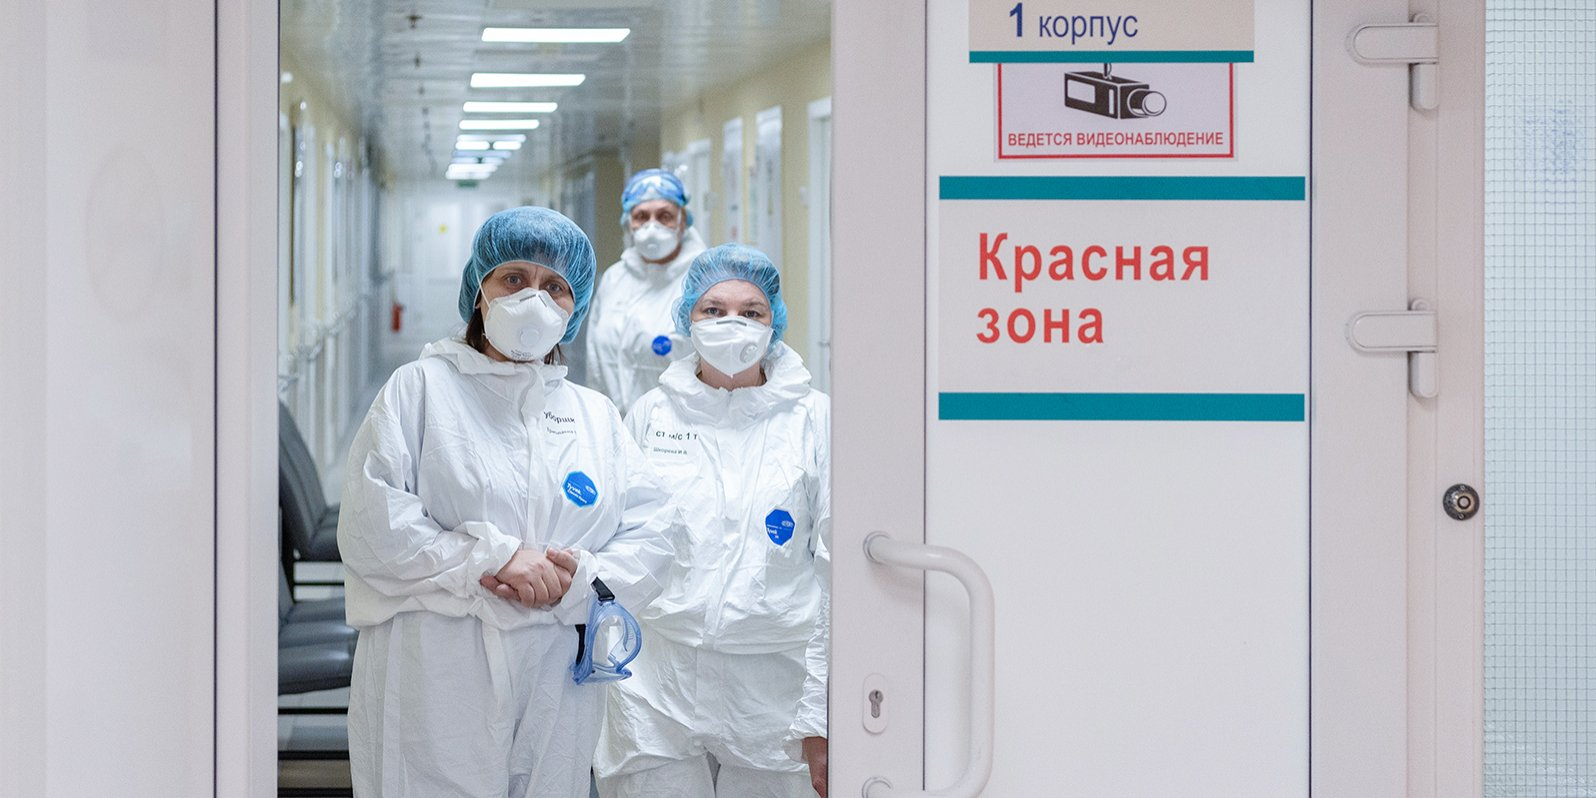 В Кирове 654 больных COVID-19 с пневмонией: опубликованы данные по области